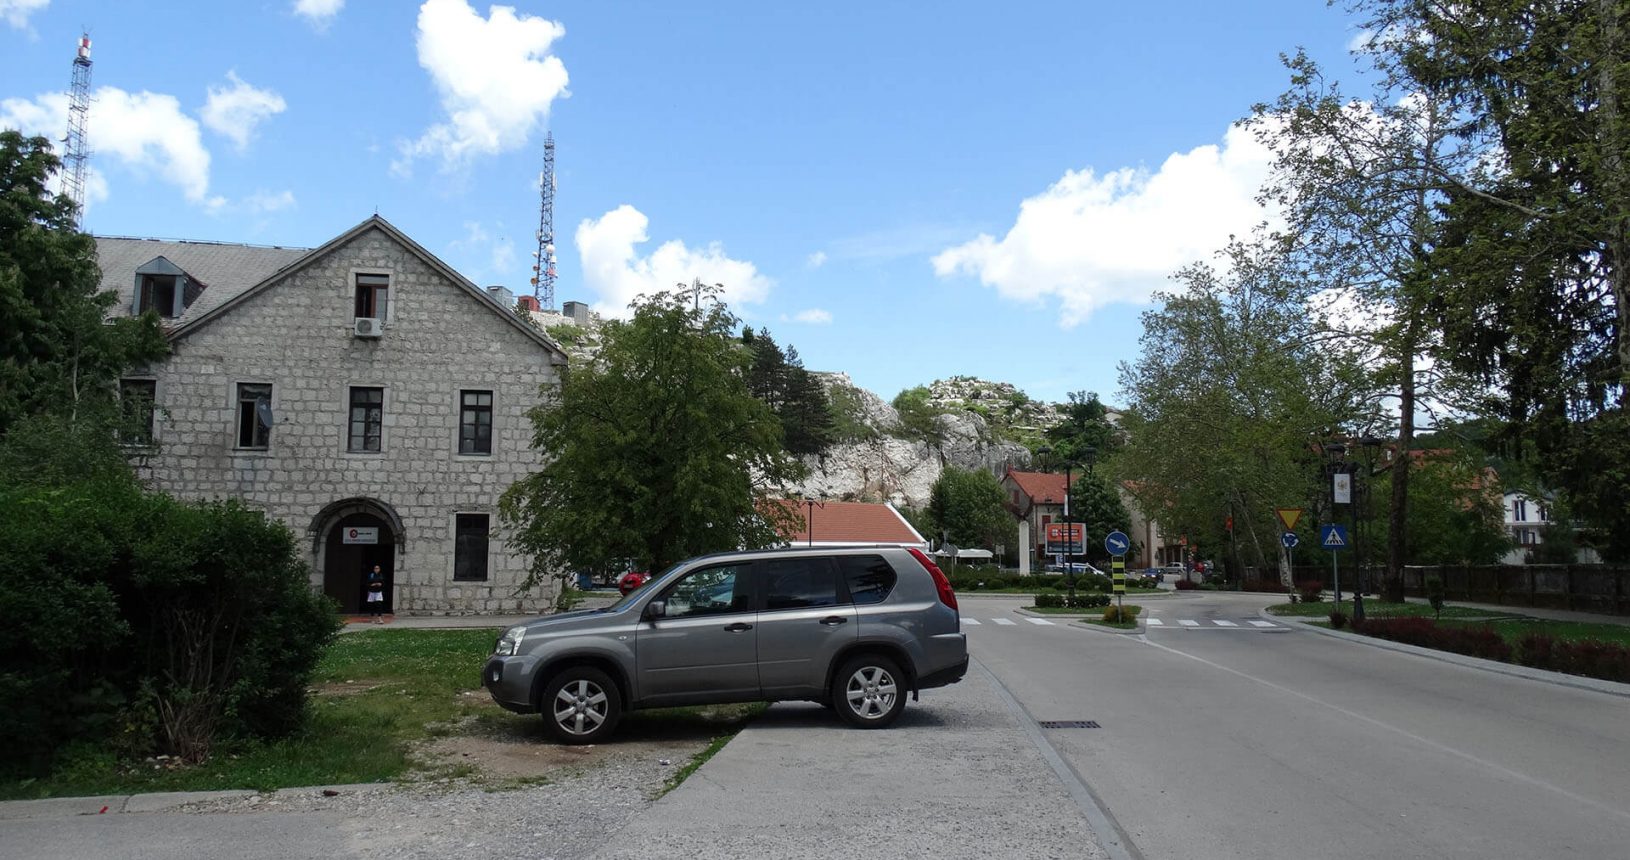 The street in Cetinje